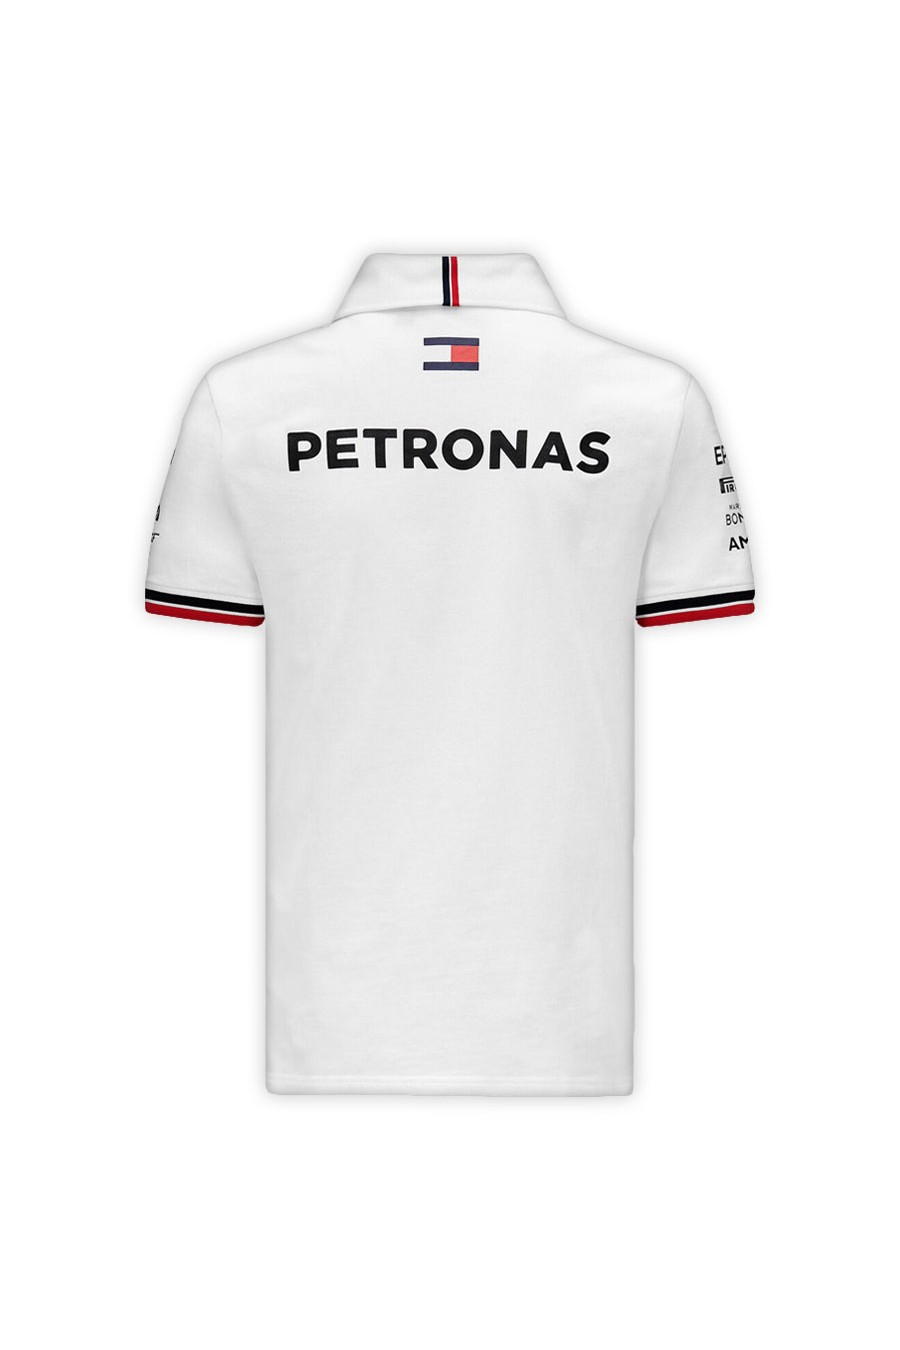 Mercedes F1 polo shirt | GPBox